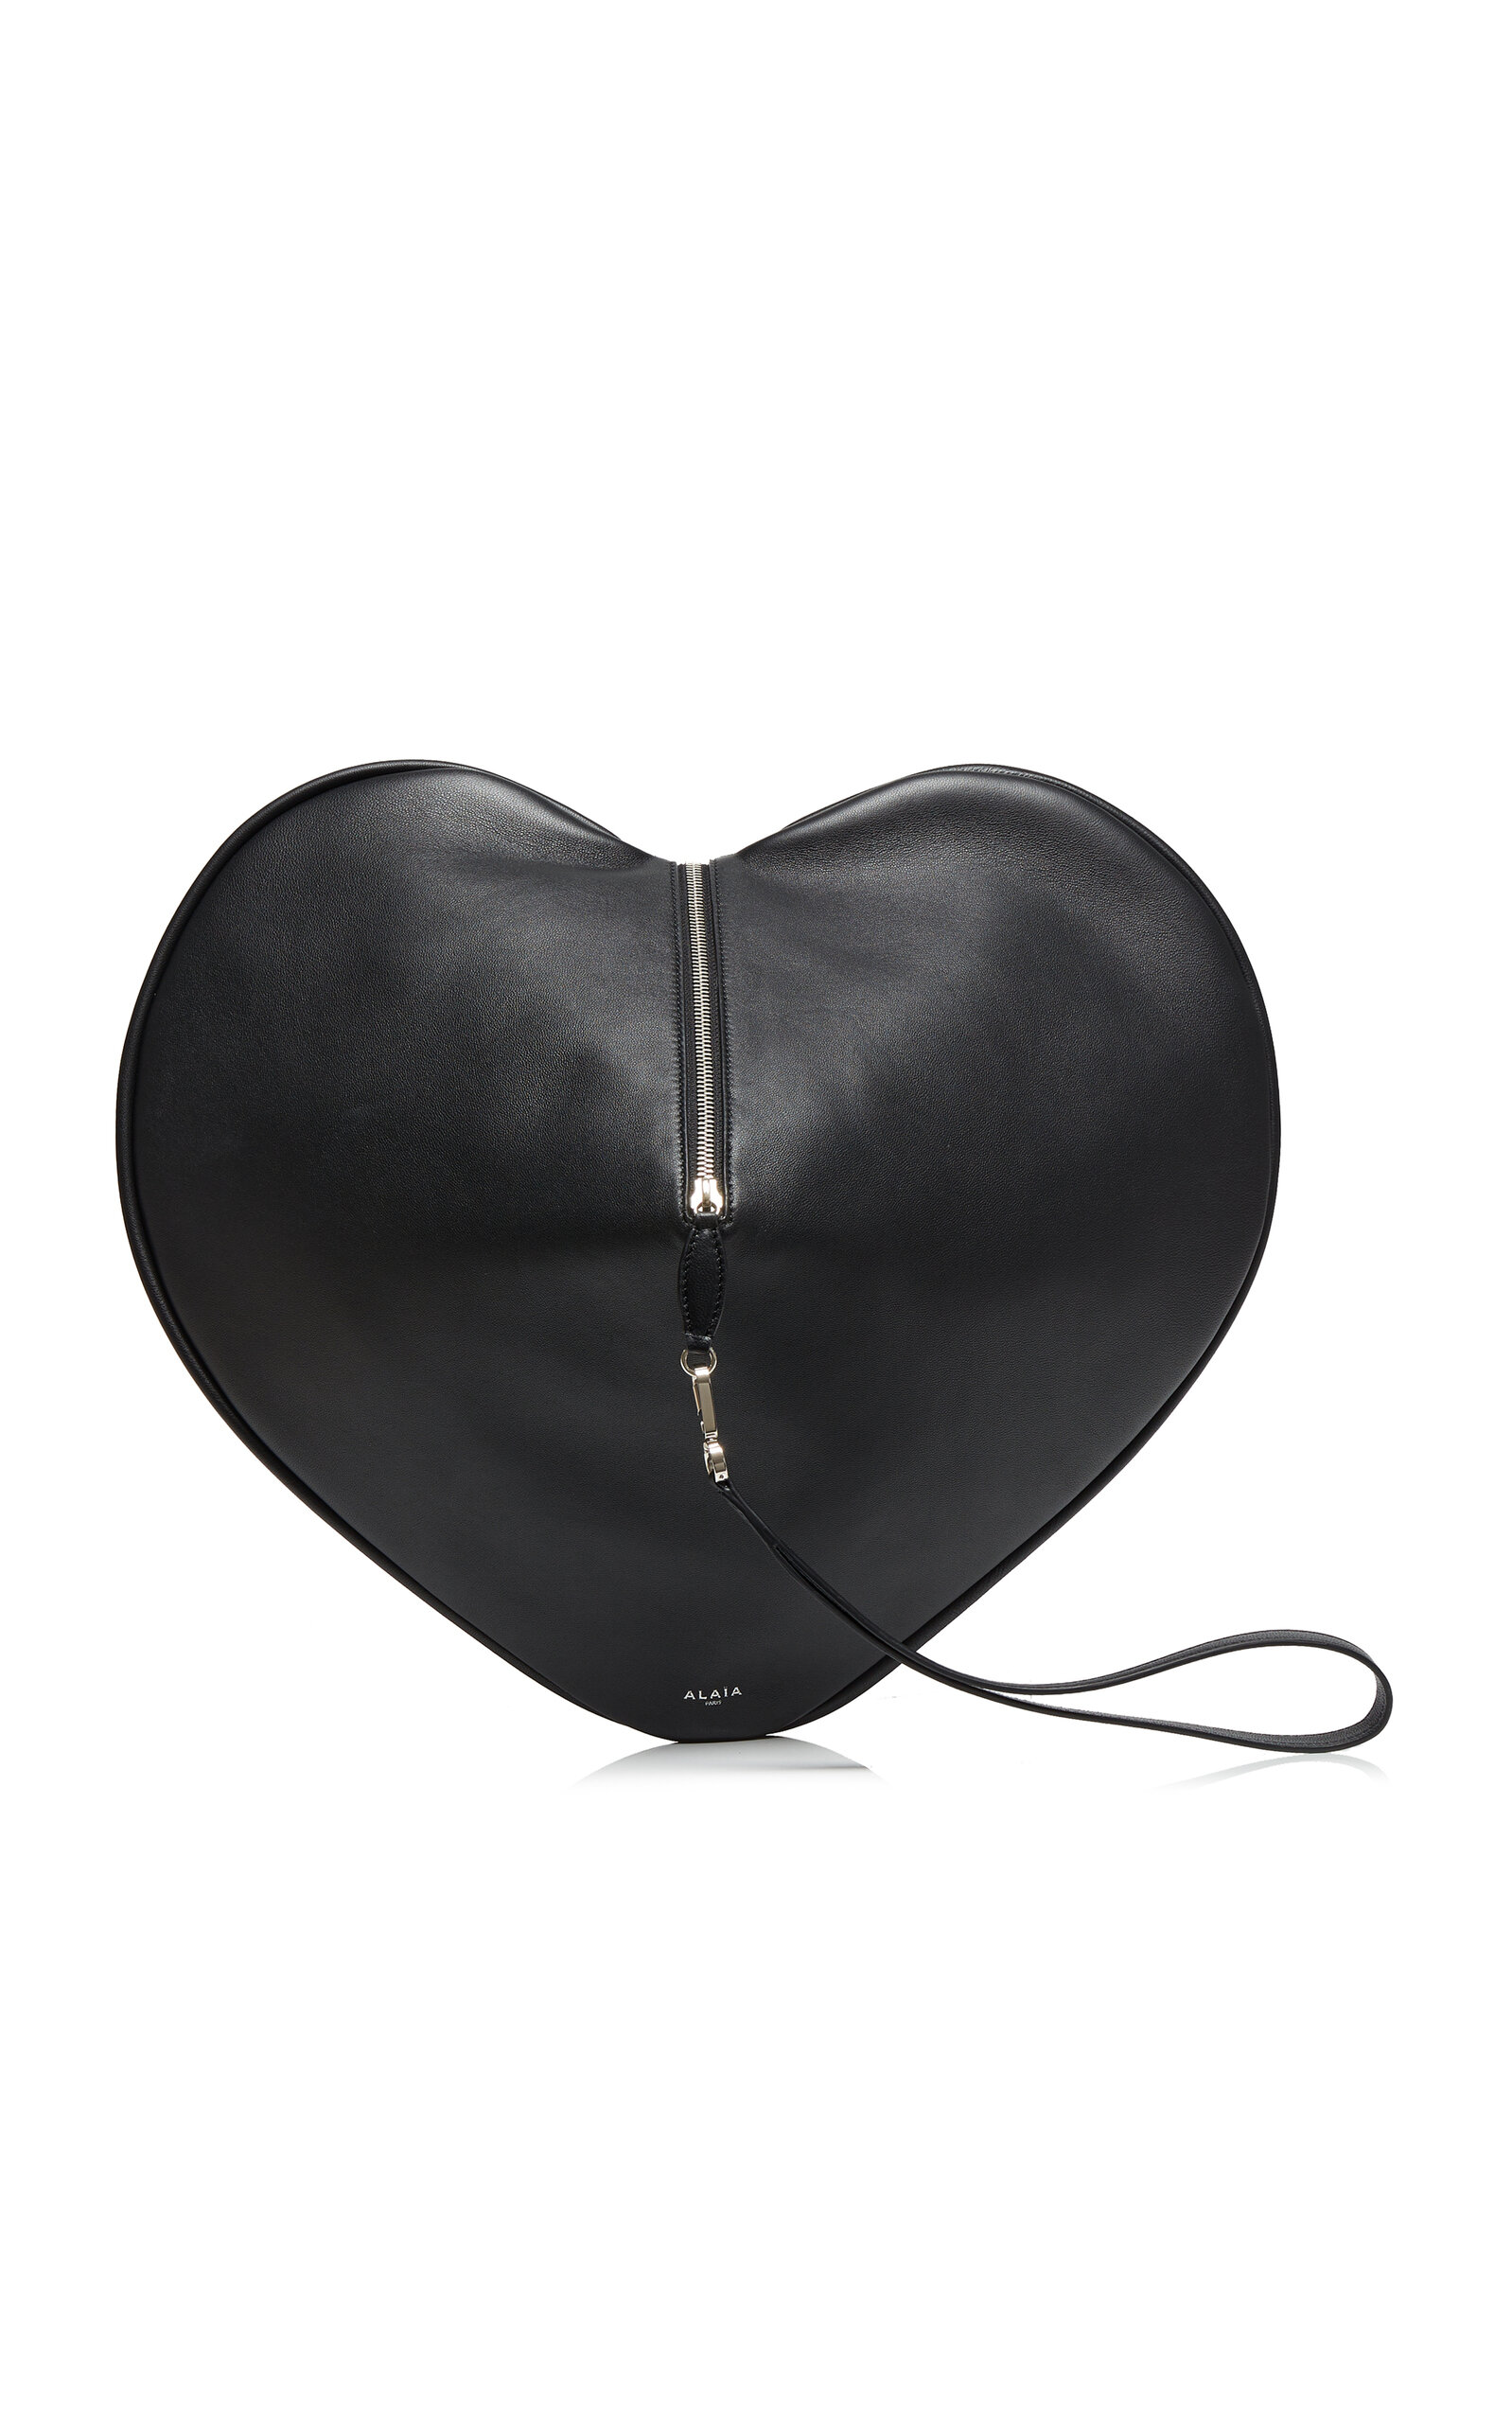 ALAÏA Le Coeur Leather Pouch